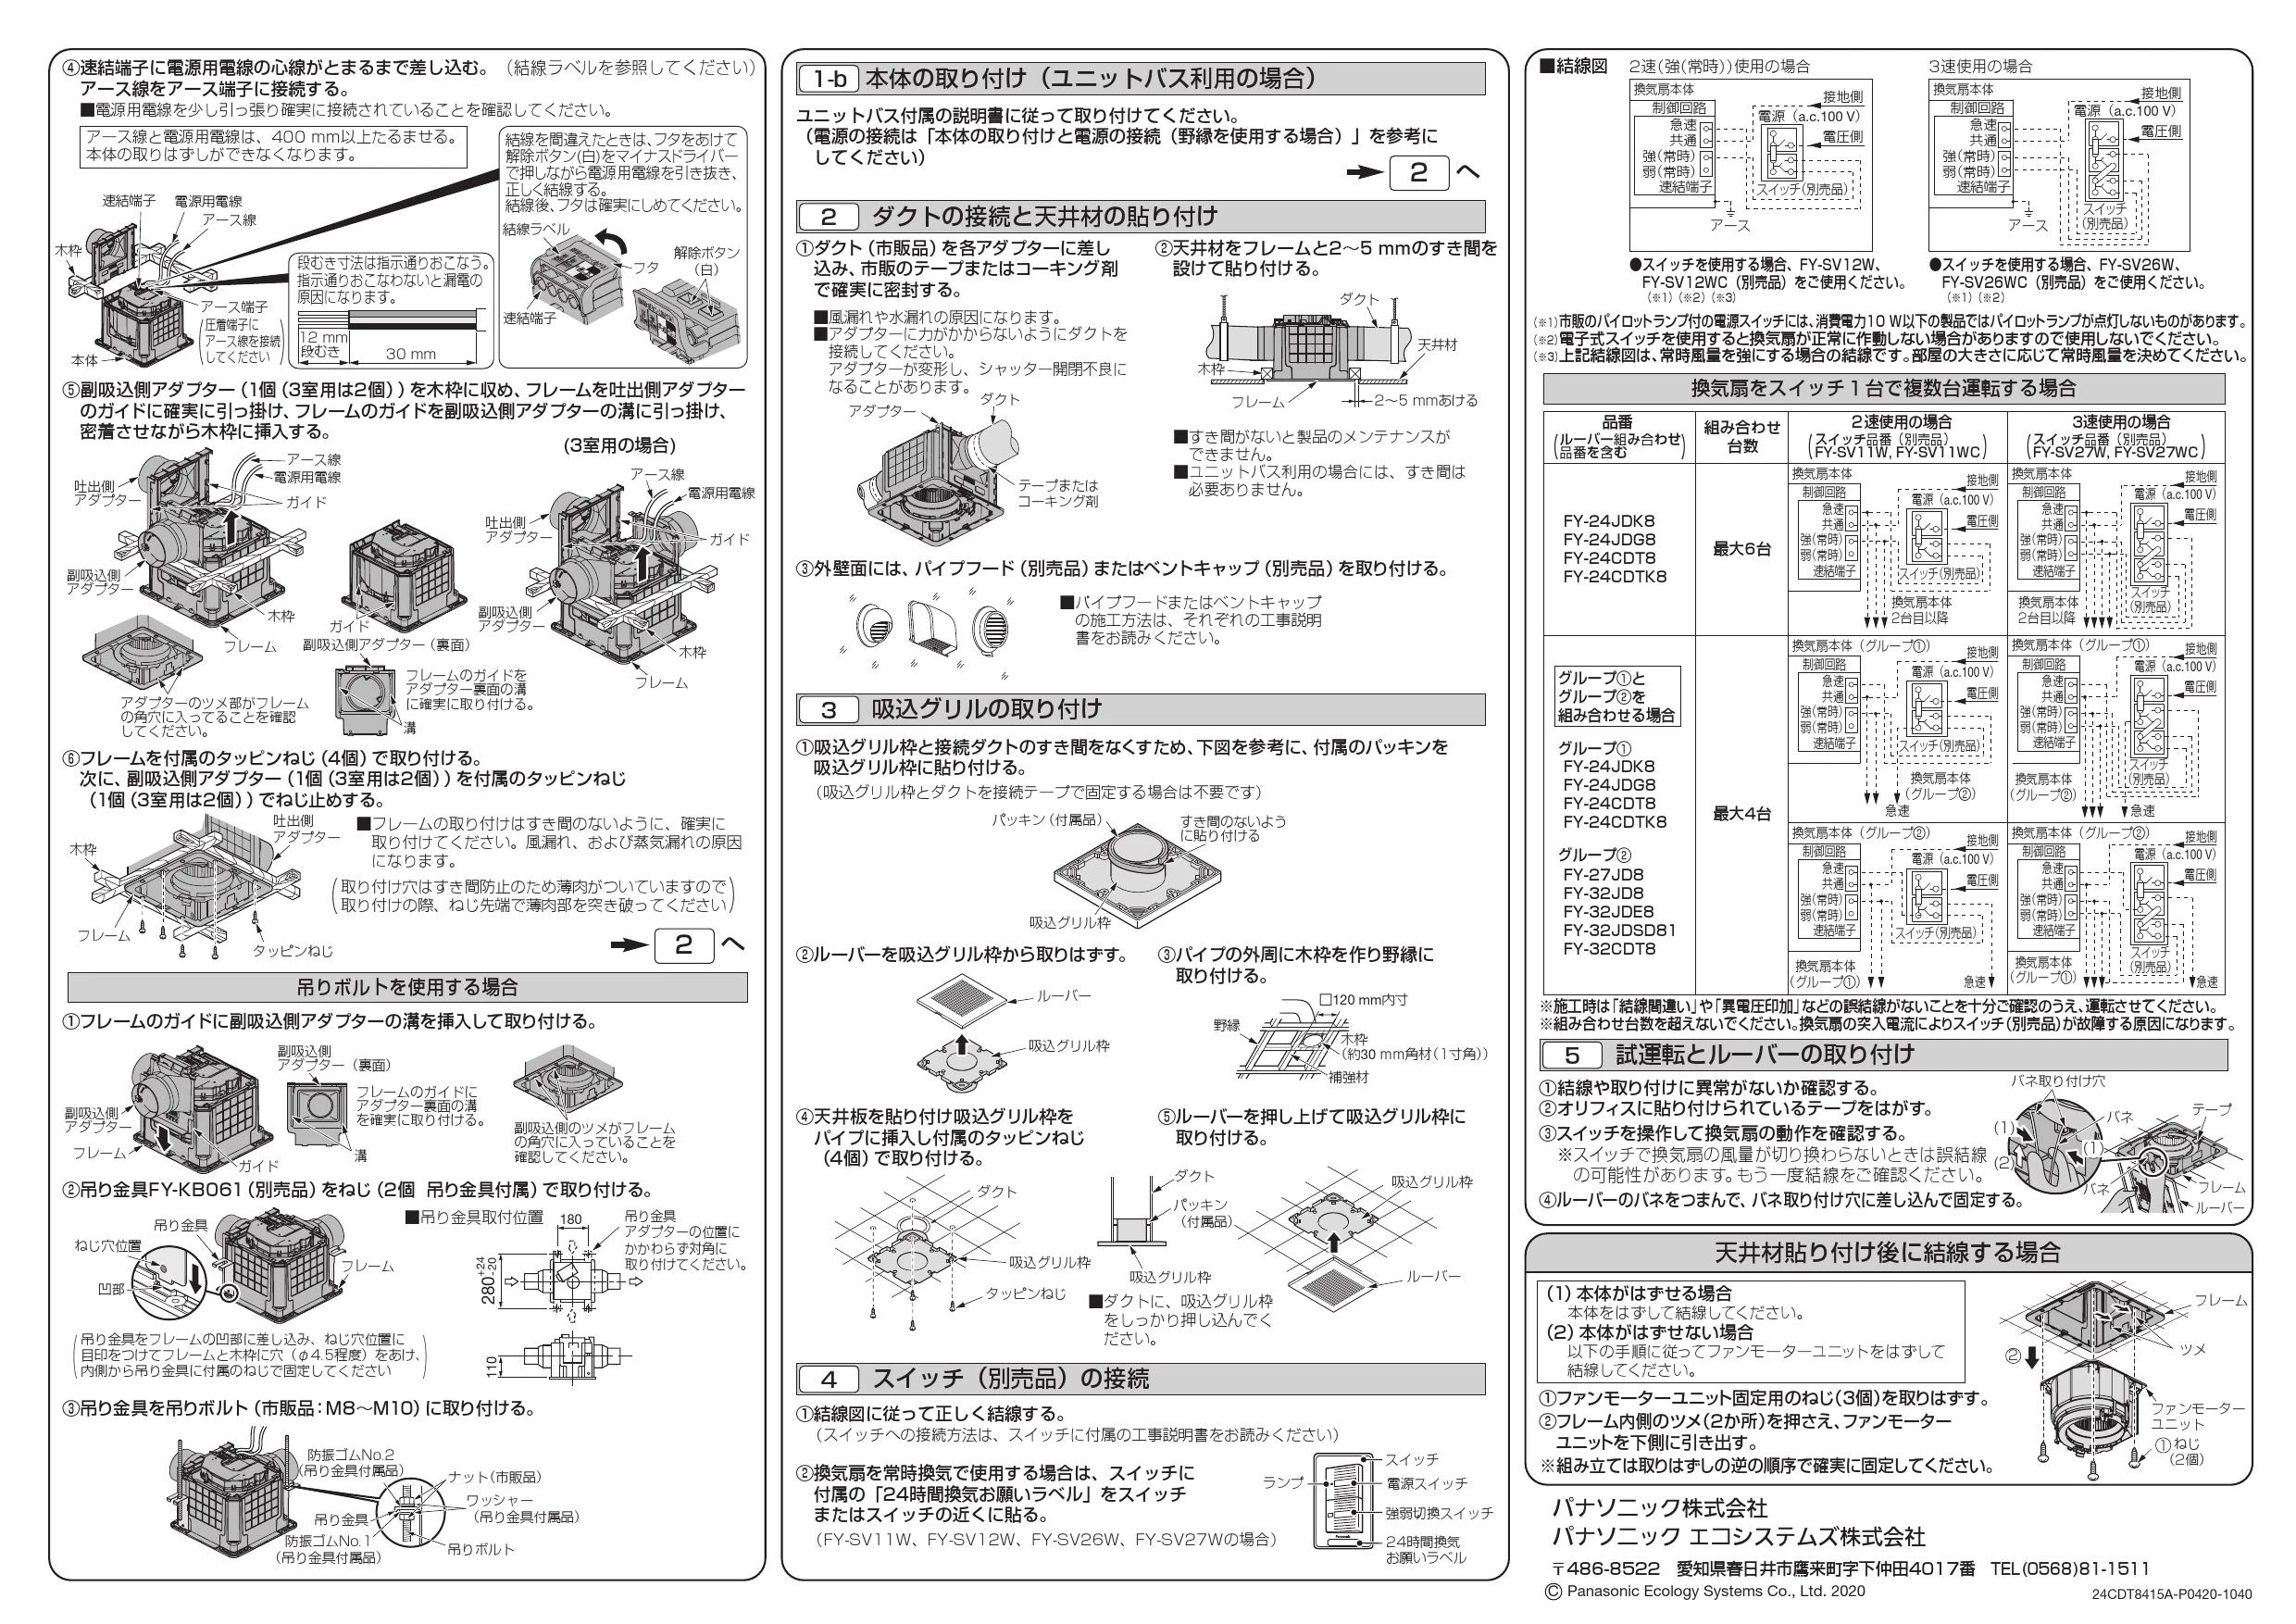 パナソニック FY-24CDT8 取扱説明書 商品図面 施工説明書|パナソニック 